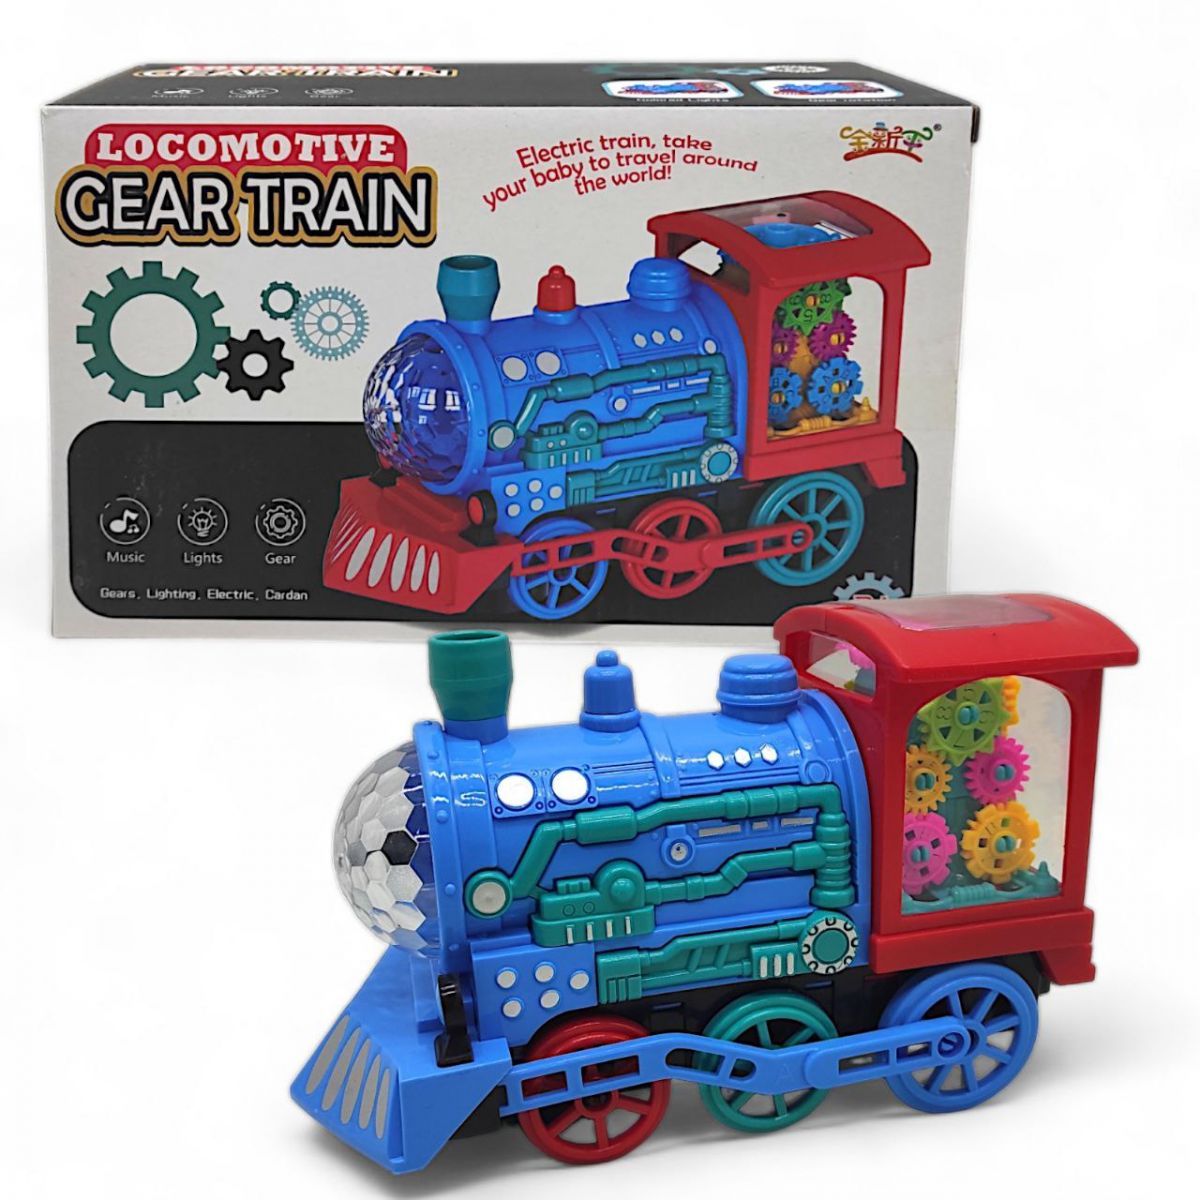 Інтерактивна іграшка з шестернями "Gear Train", вид 1